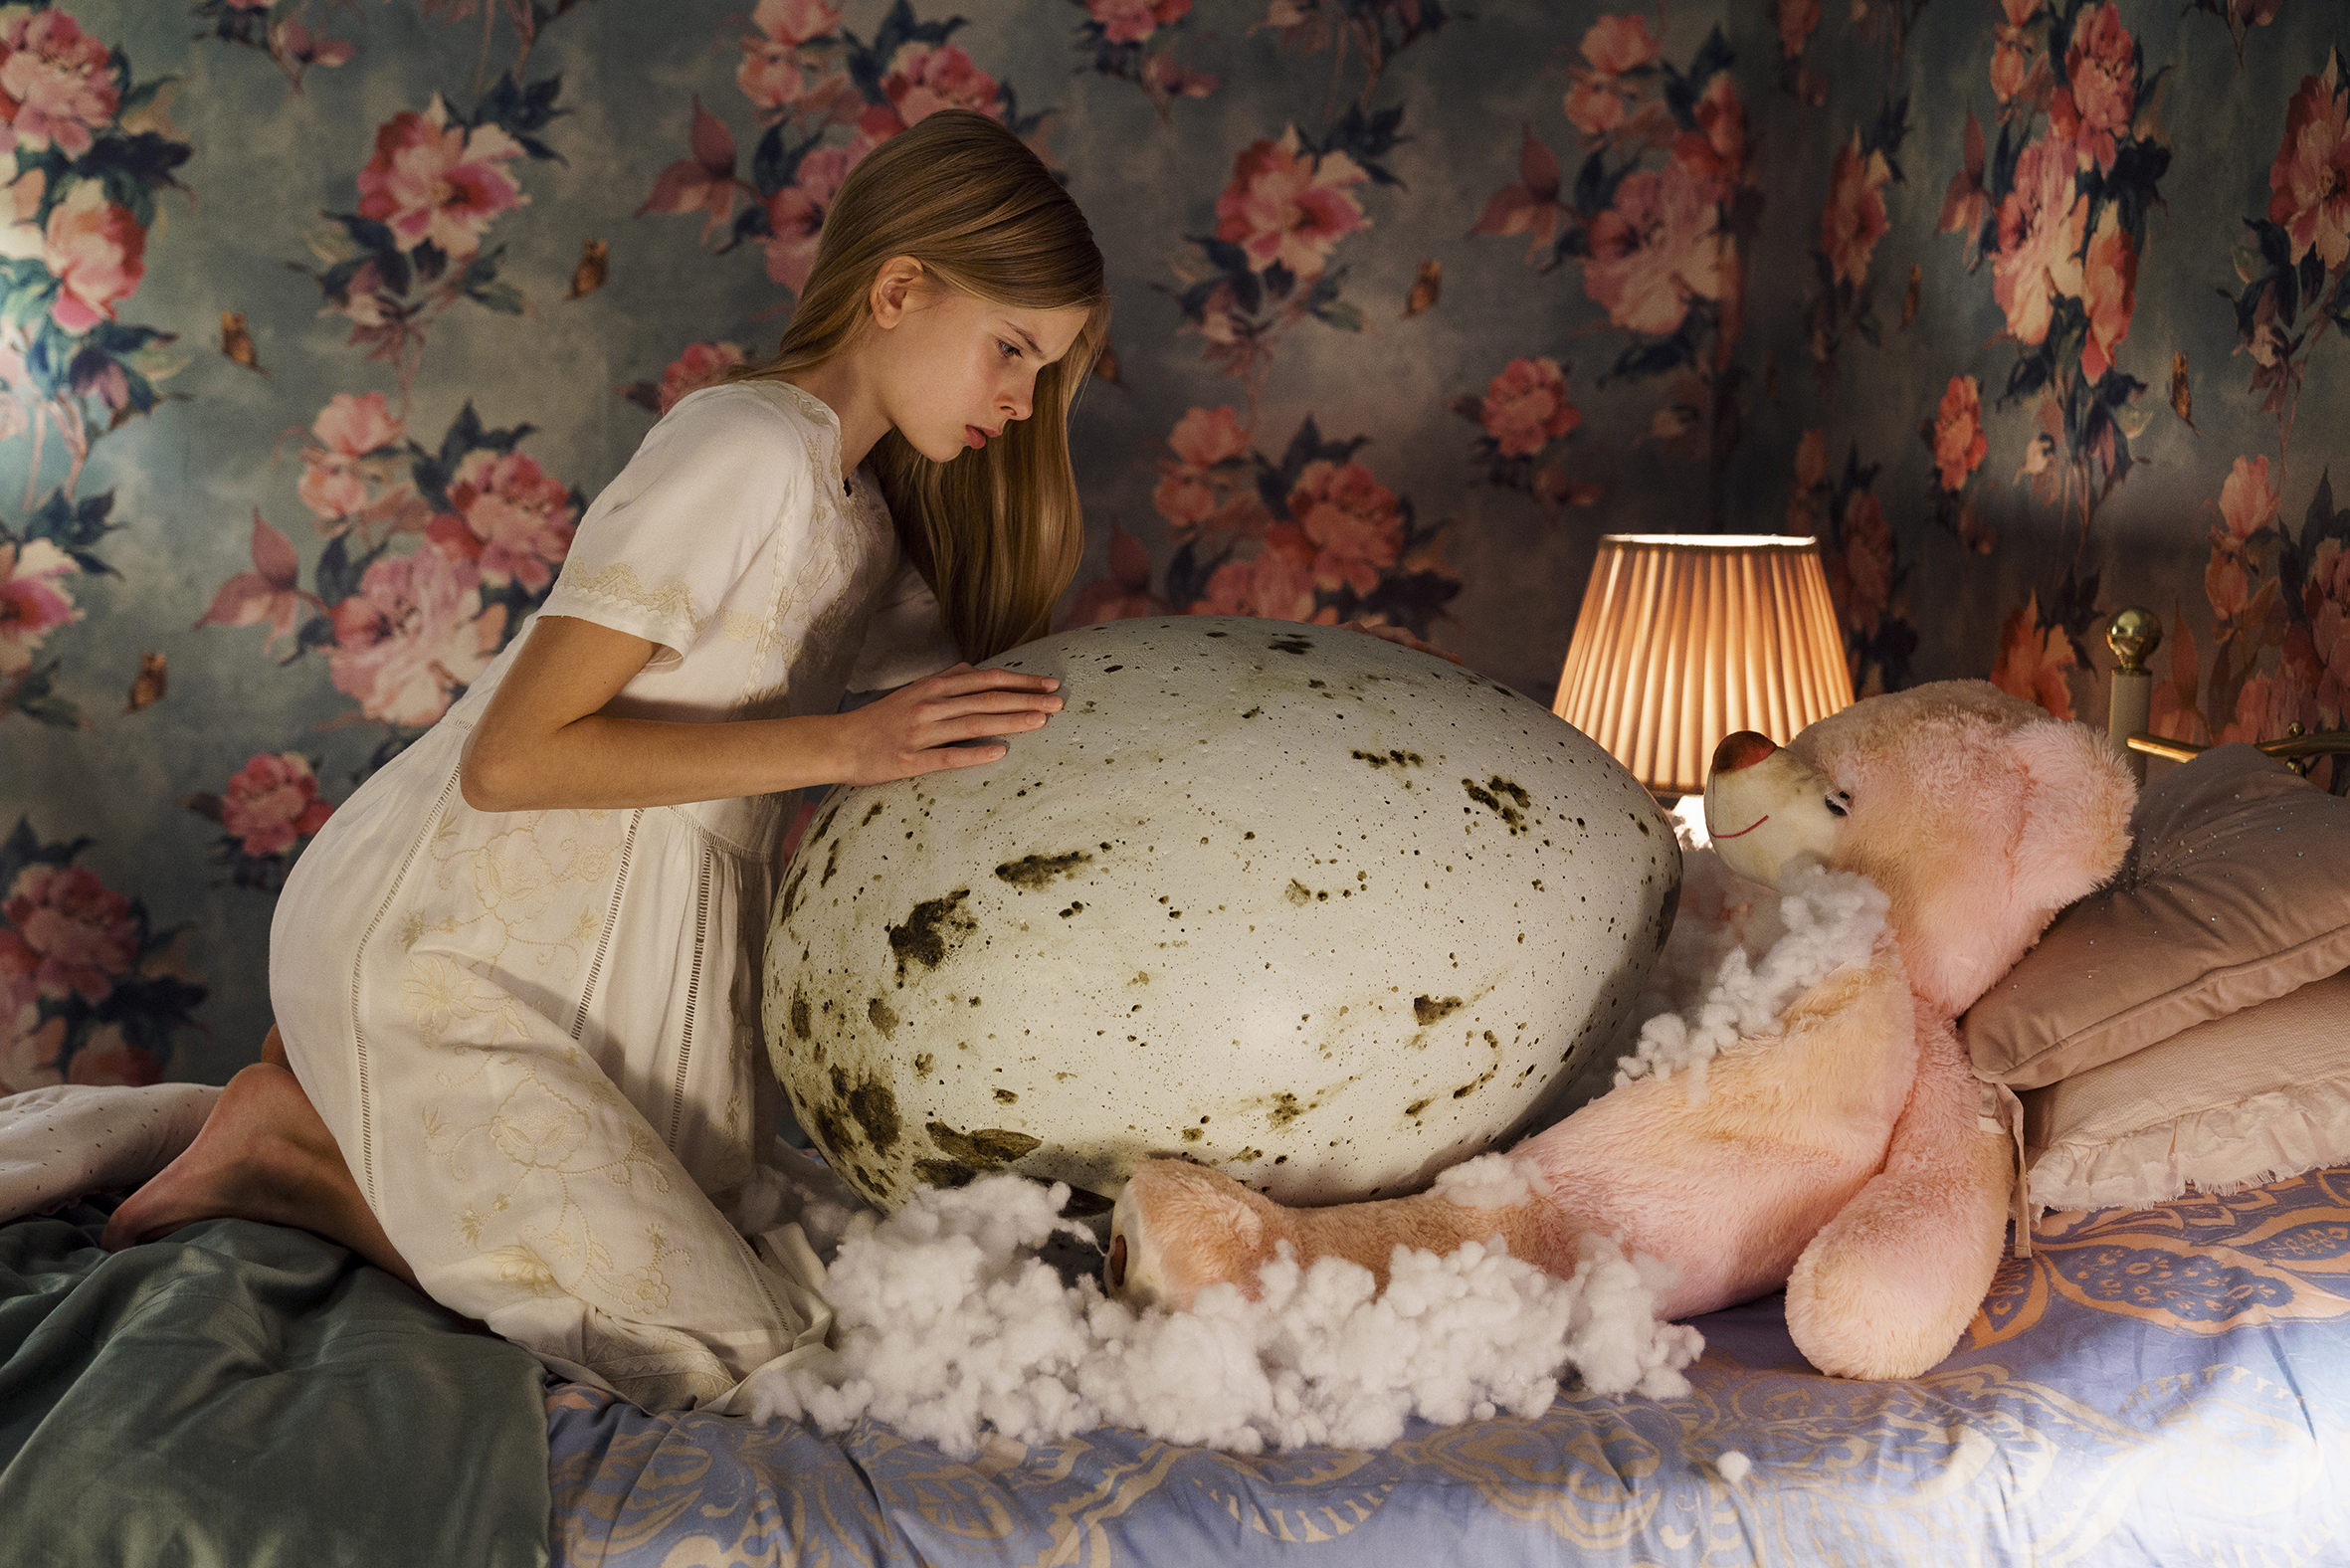 Nuori tyttö sängyllä valkoisessa yöpuvussa ison linnunmunan vieressä.